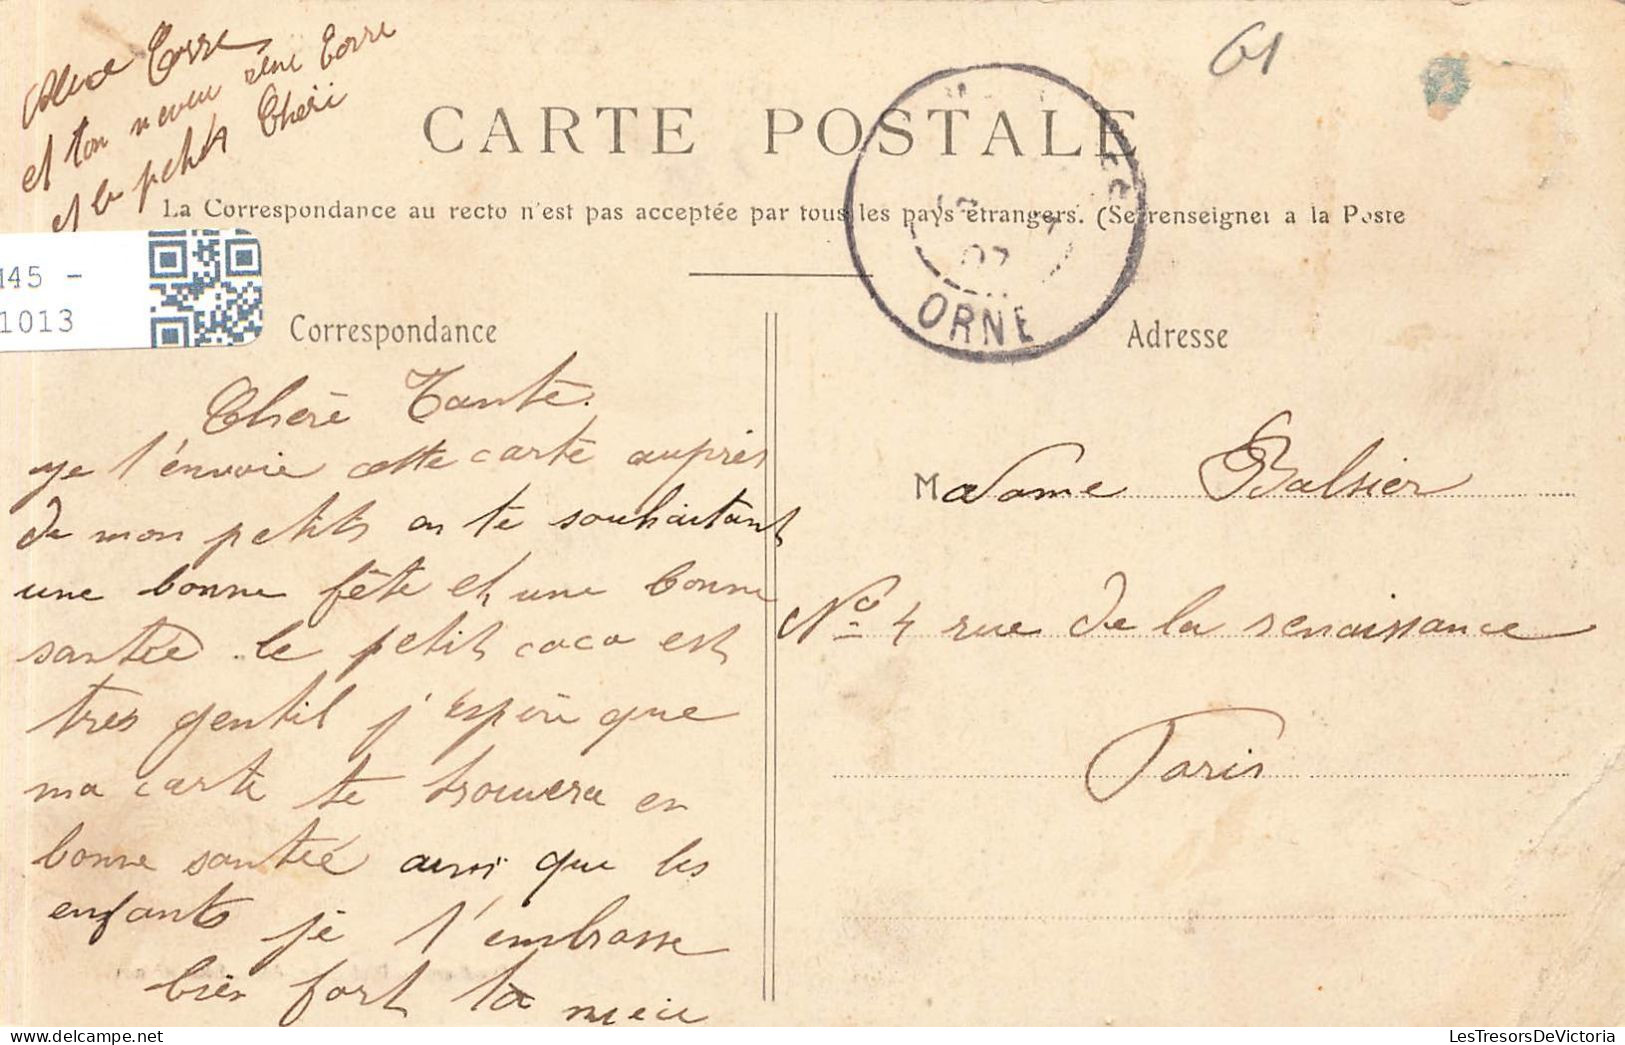 FRANCE - Les Yveteaux - Le Château - Carte Postale Ancienne - Other & Unclassified